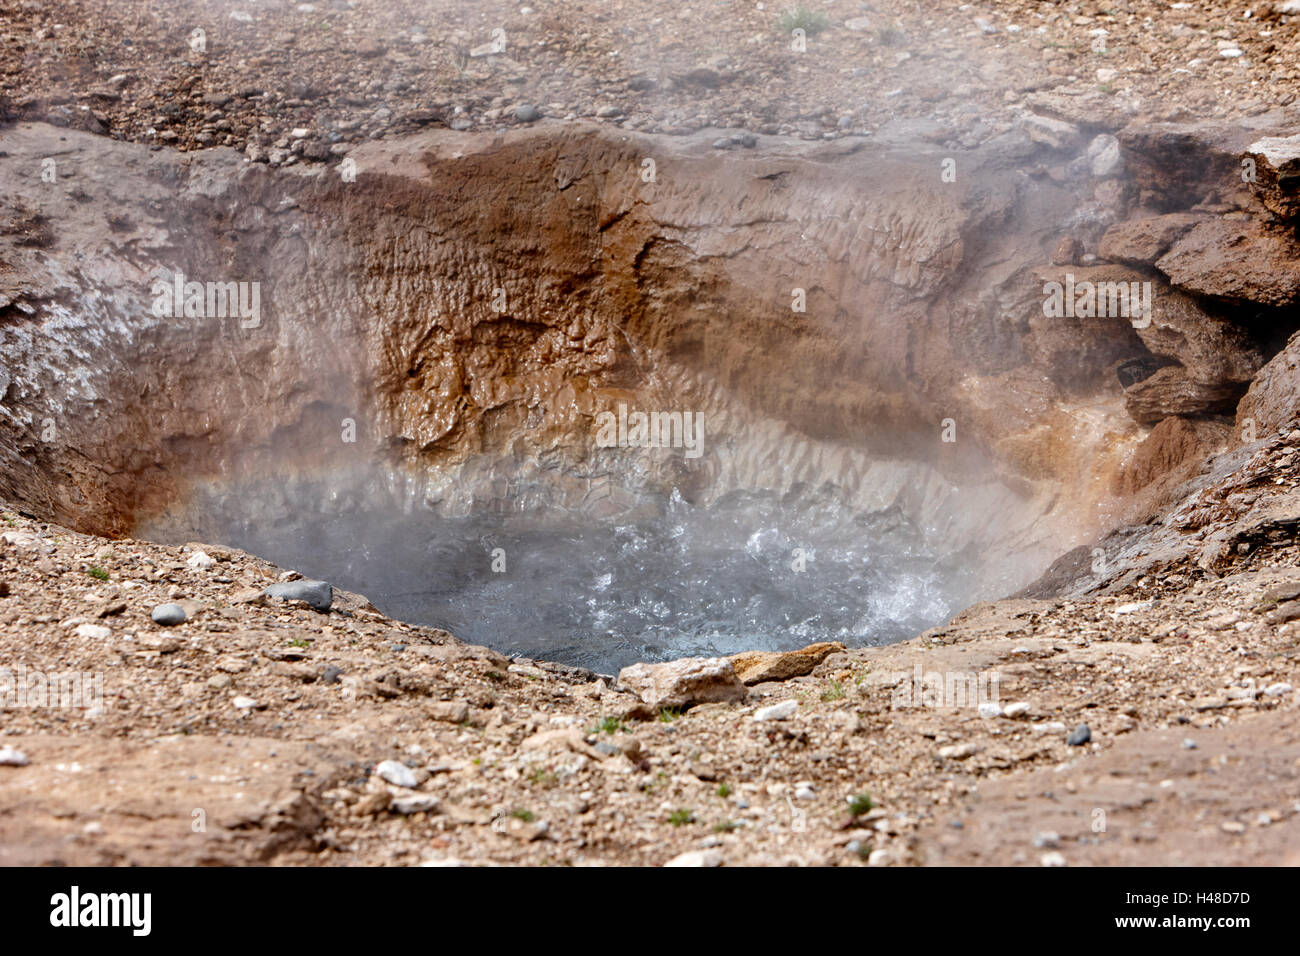 heißes Wasser sprudelt mit chemischen und geologischen Ablagerungen, verursacht durch Geysir Wasser Überlauf Geysir Island Stockfoto